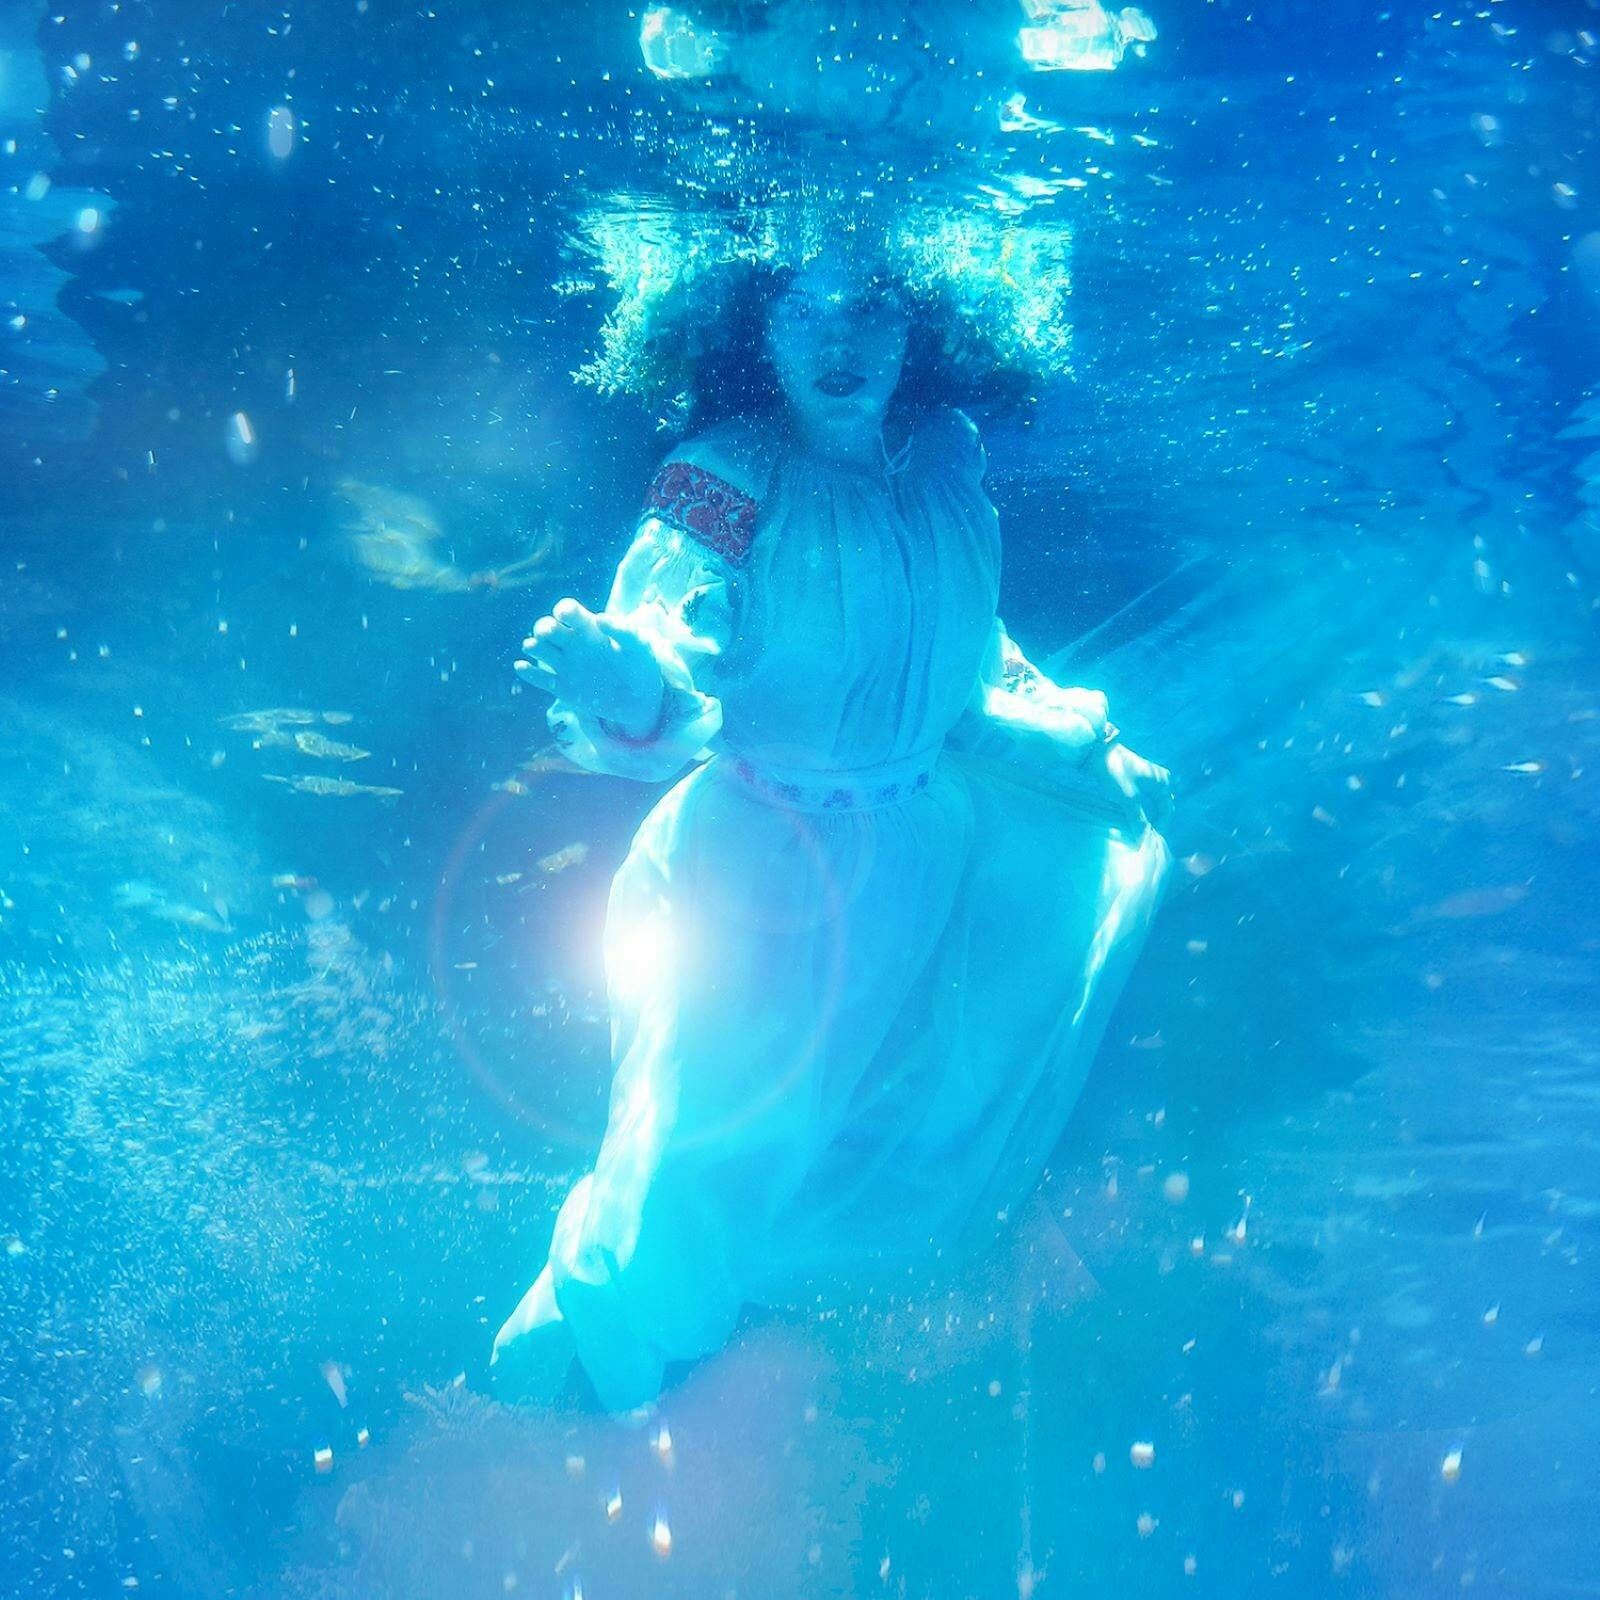 A girl in Ukrainian dress floats underwater, reaching forward